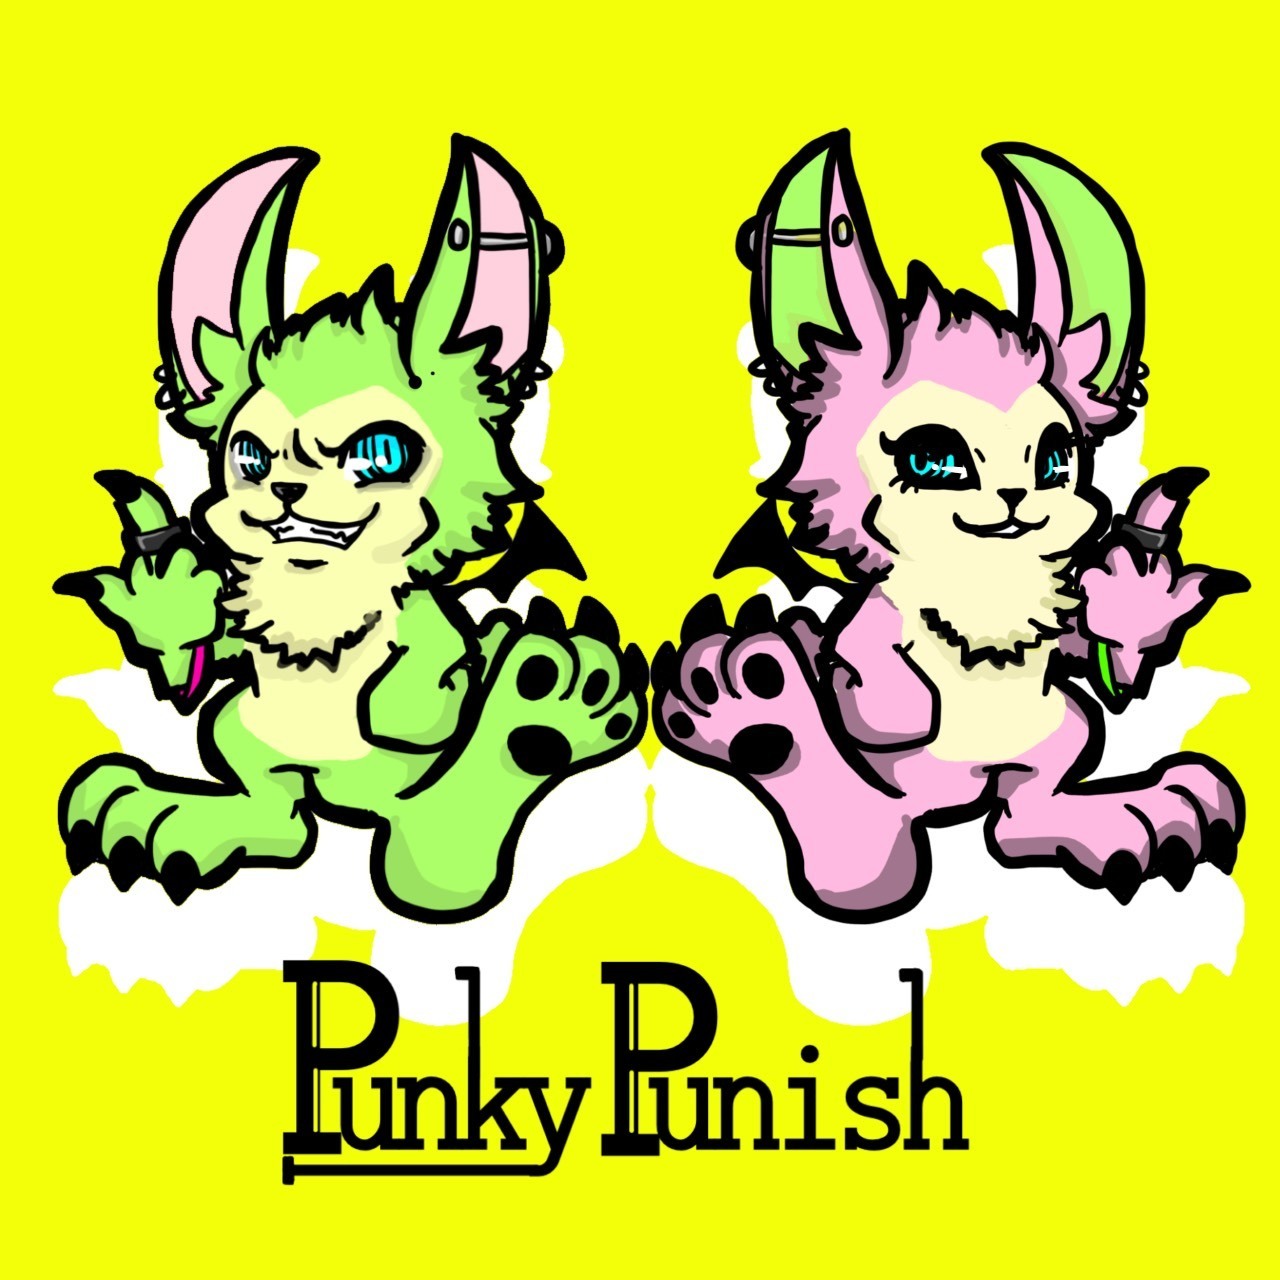 Punky Punish